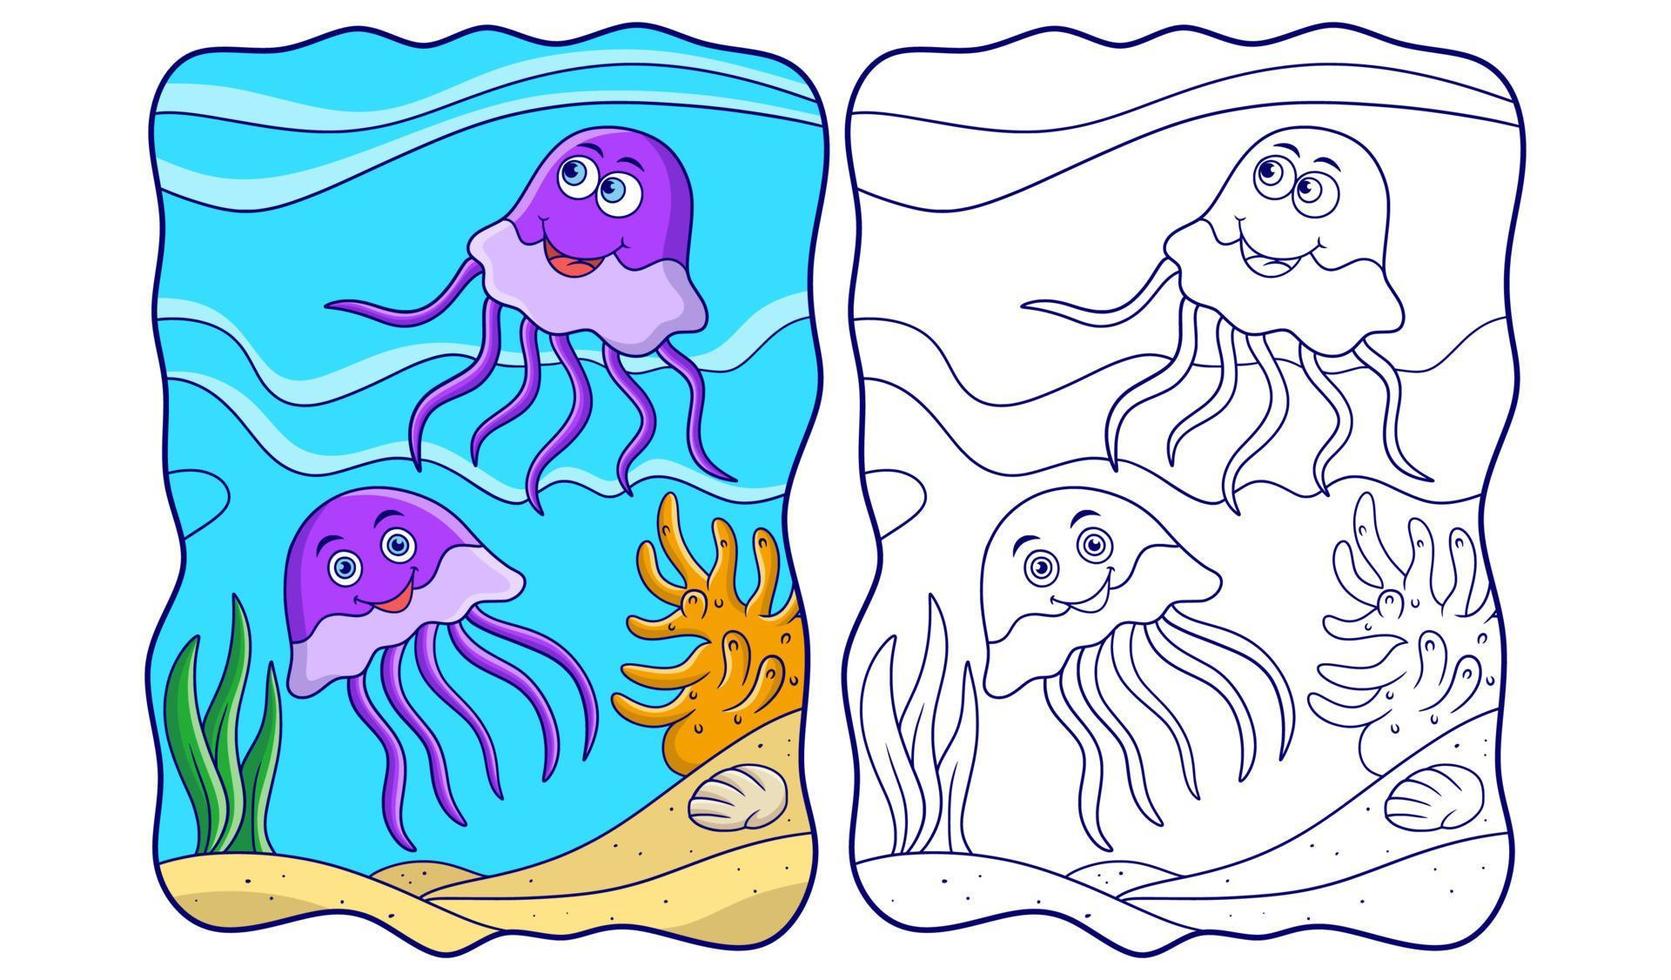 illustrazione del fumetto due meduse che nuotano vicino al libro o alla pagina della barriera corallina dell'oceano per i bambini vettore